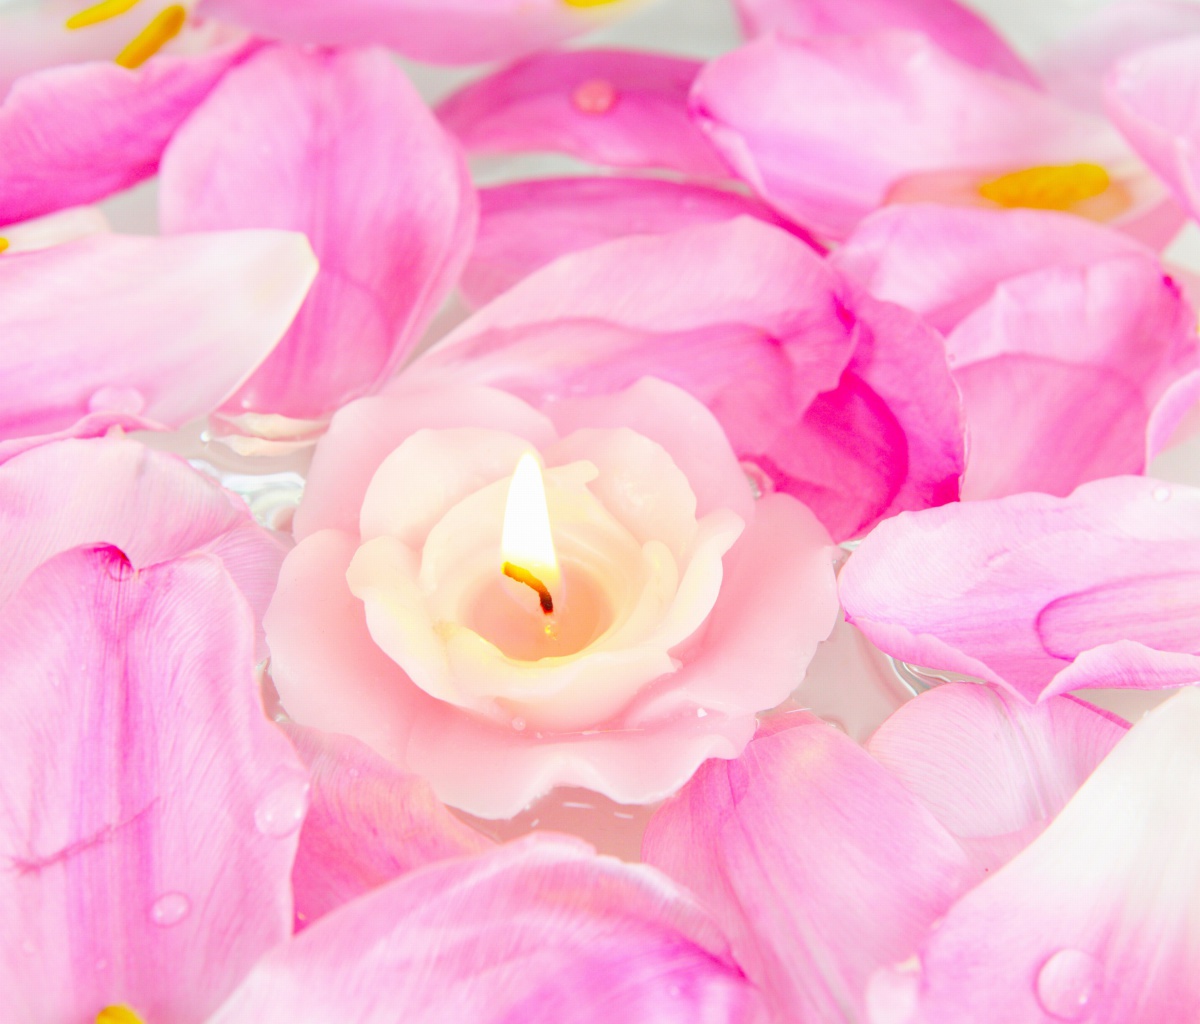 Candle on lotus petals screenshot #1 1200x1024